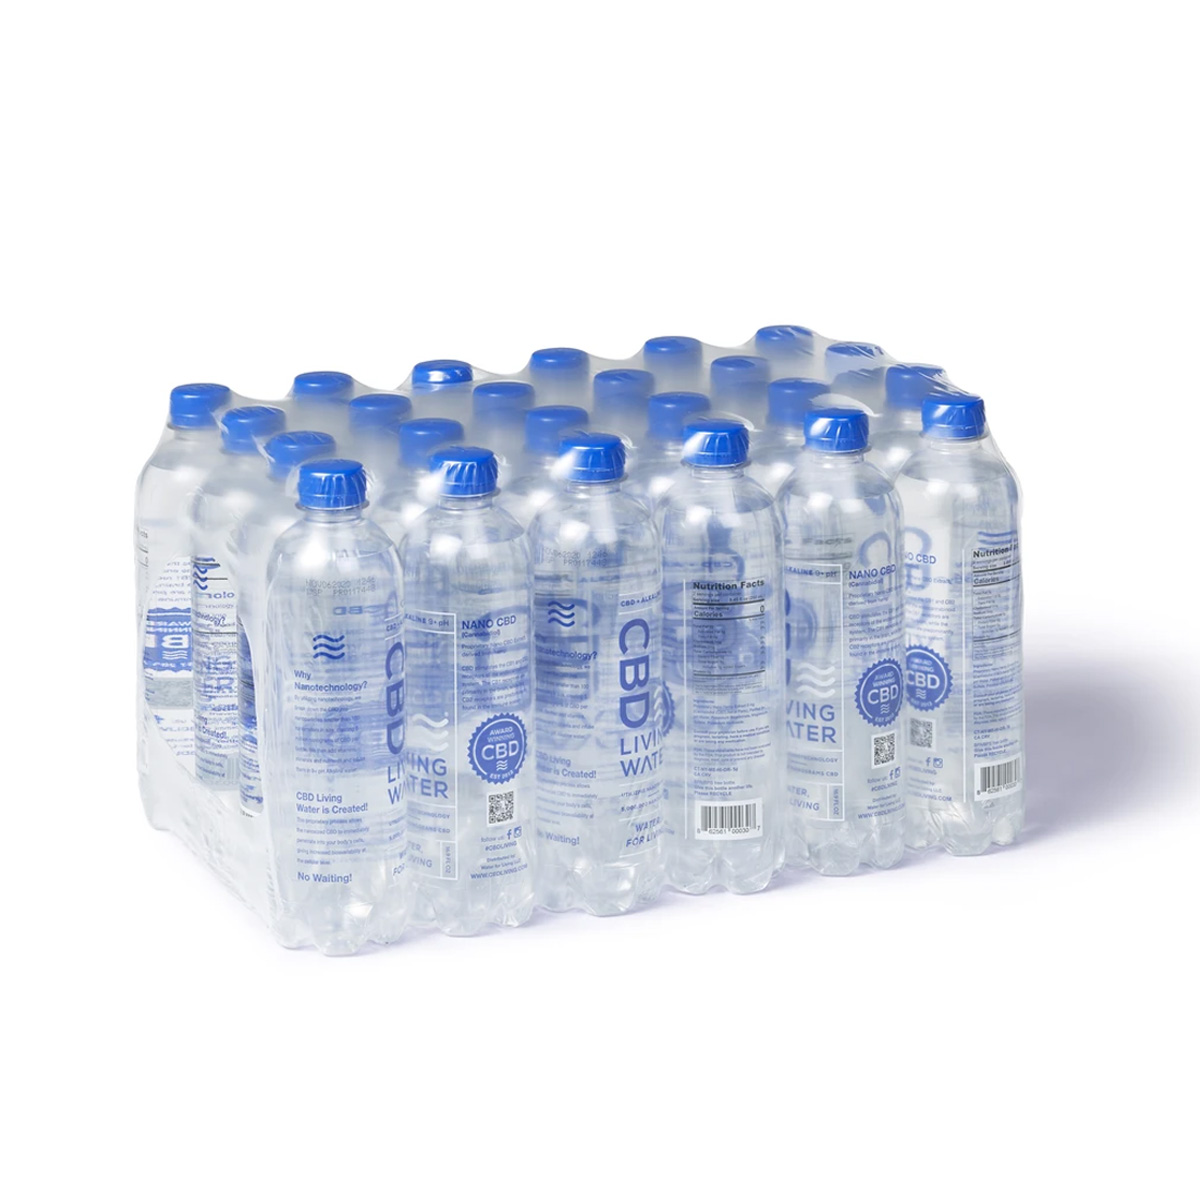 CBD Living Water Case of 24 Bottles